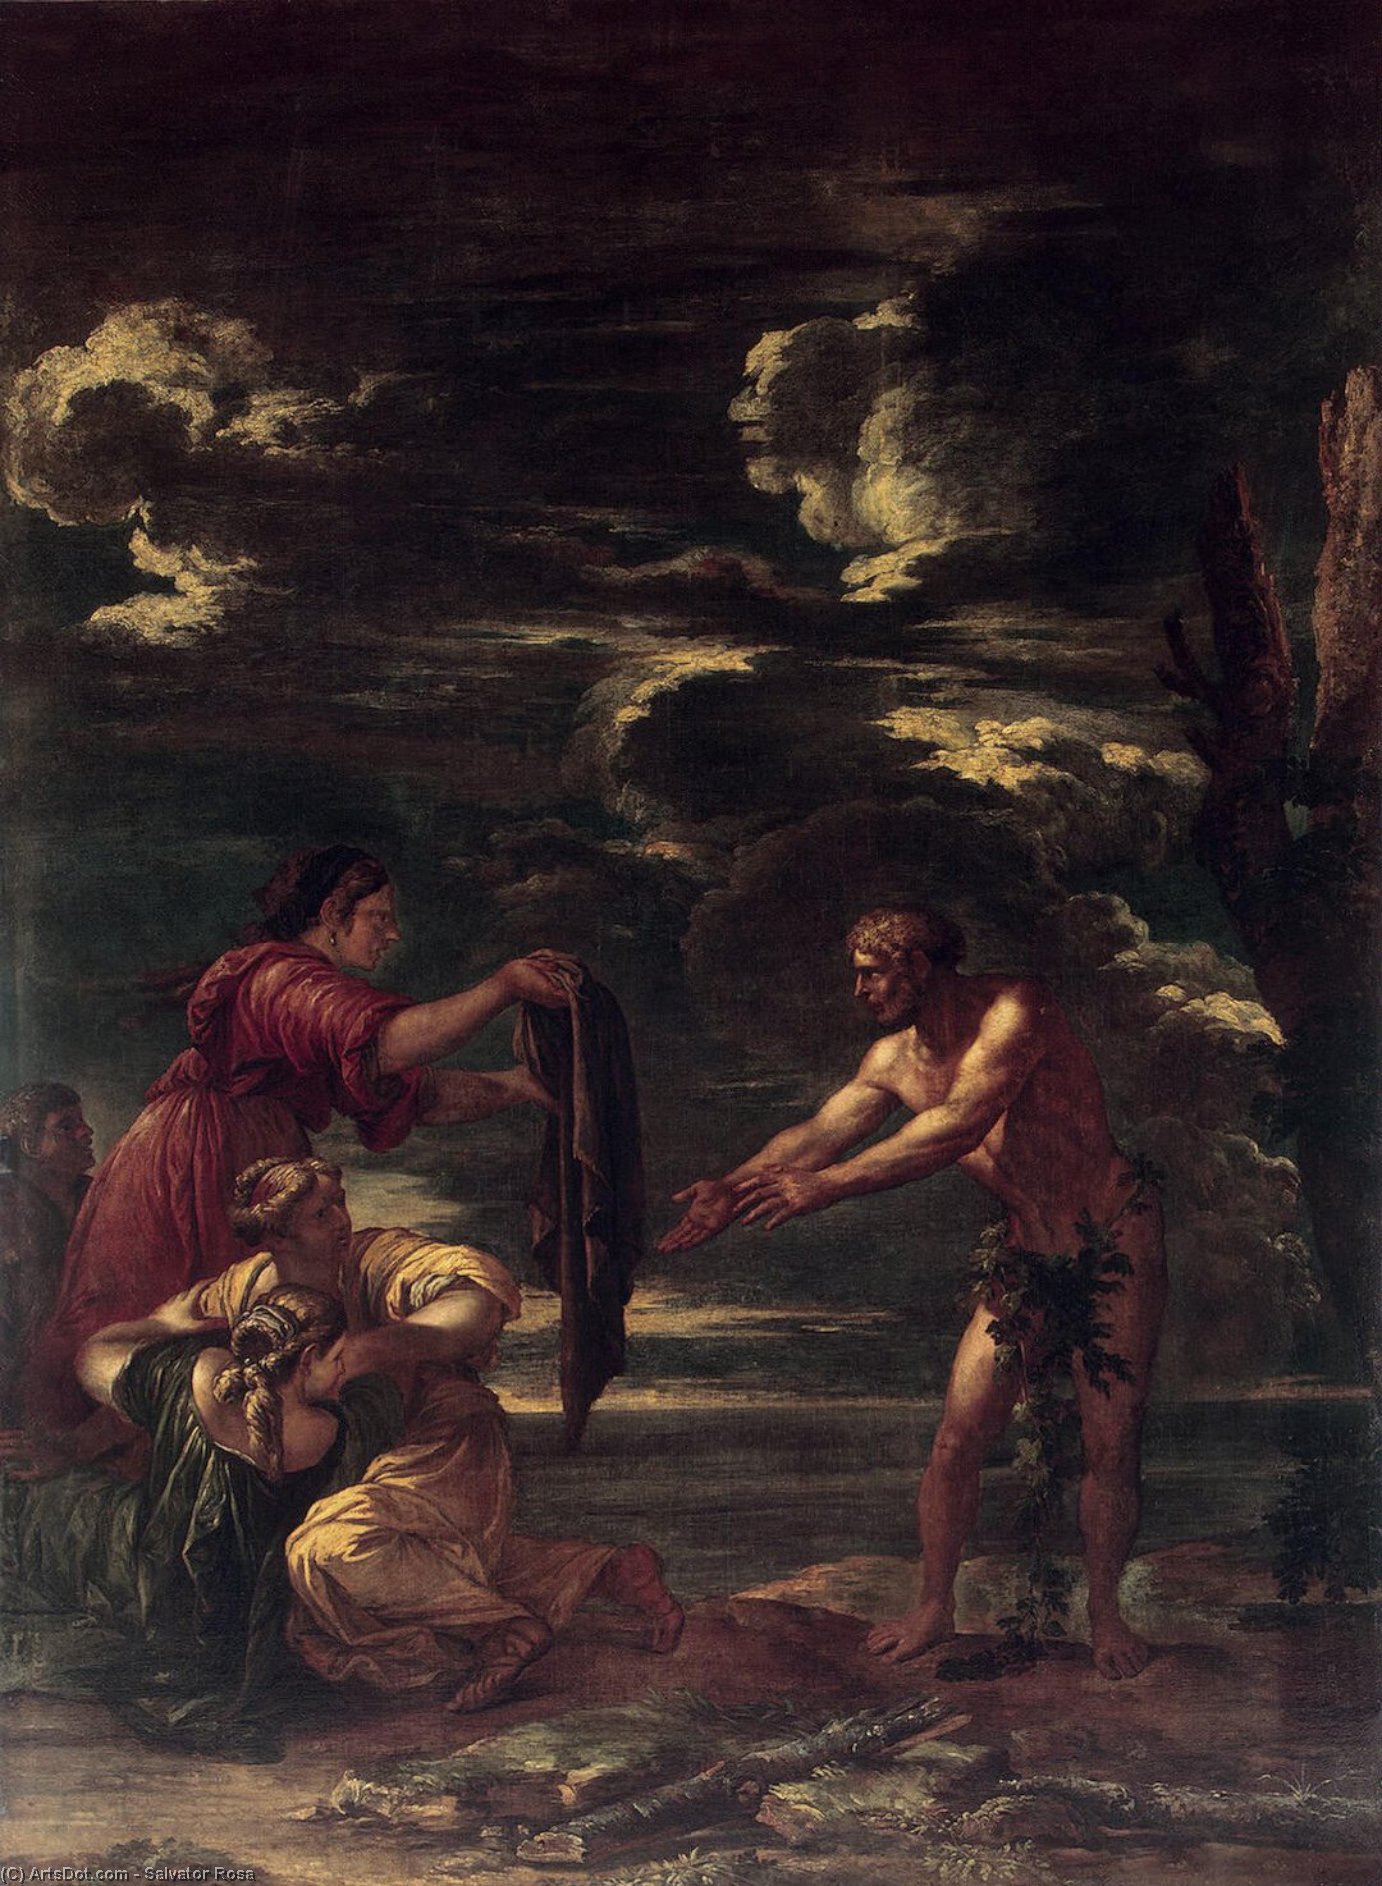 WikiOO.org - אנציקלופדיה לאמנויות יפות - ציור, יצירות אמנות Salvator Rosa - Odysseus and Nausicaa